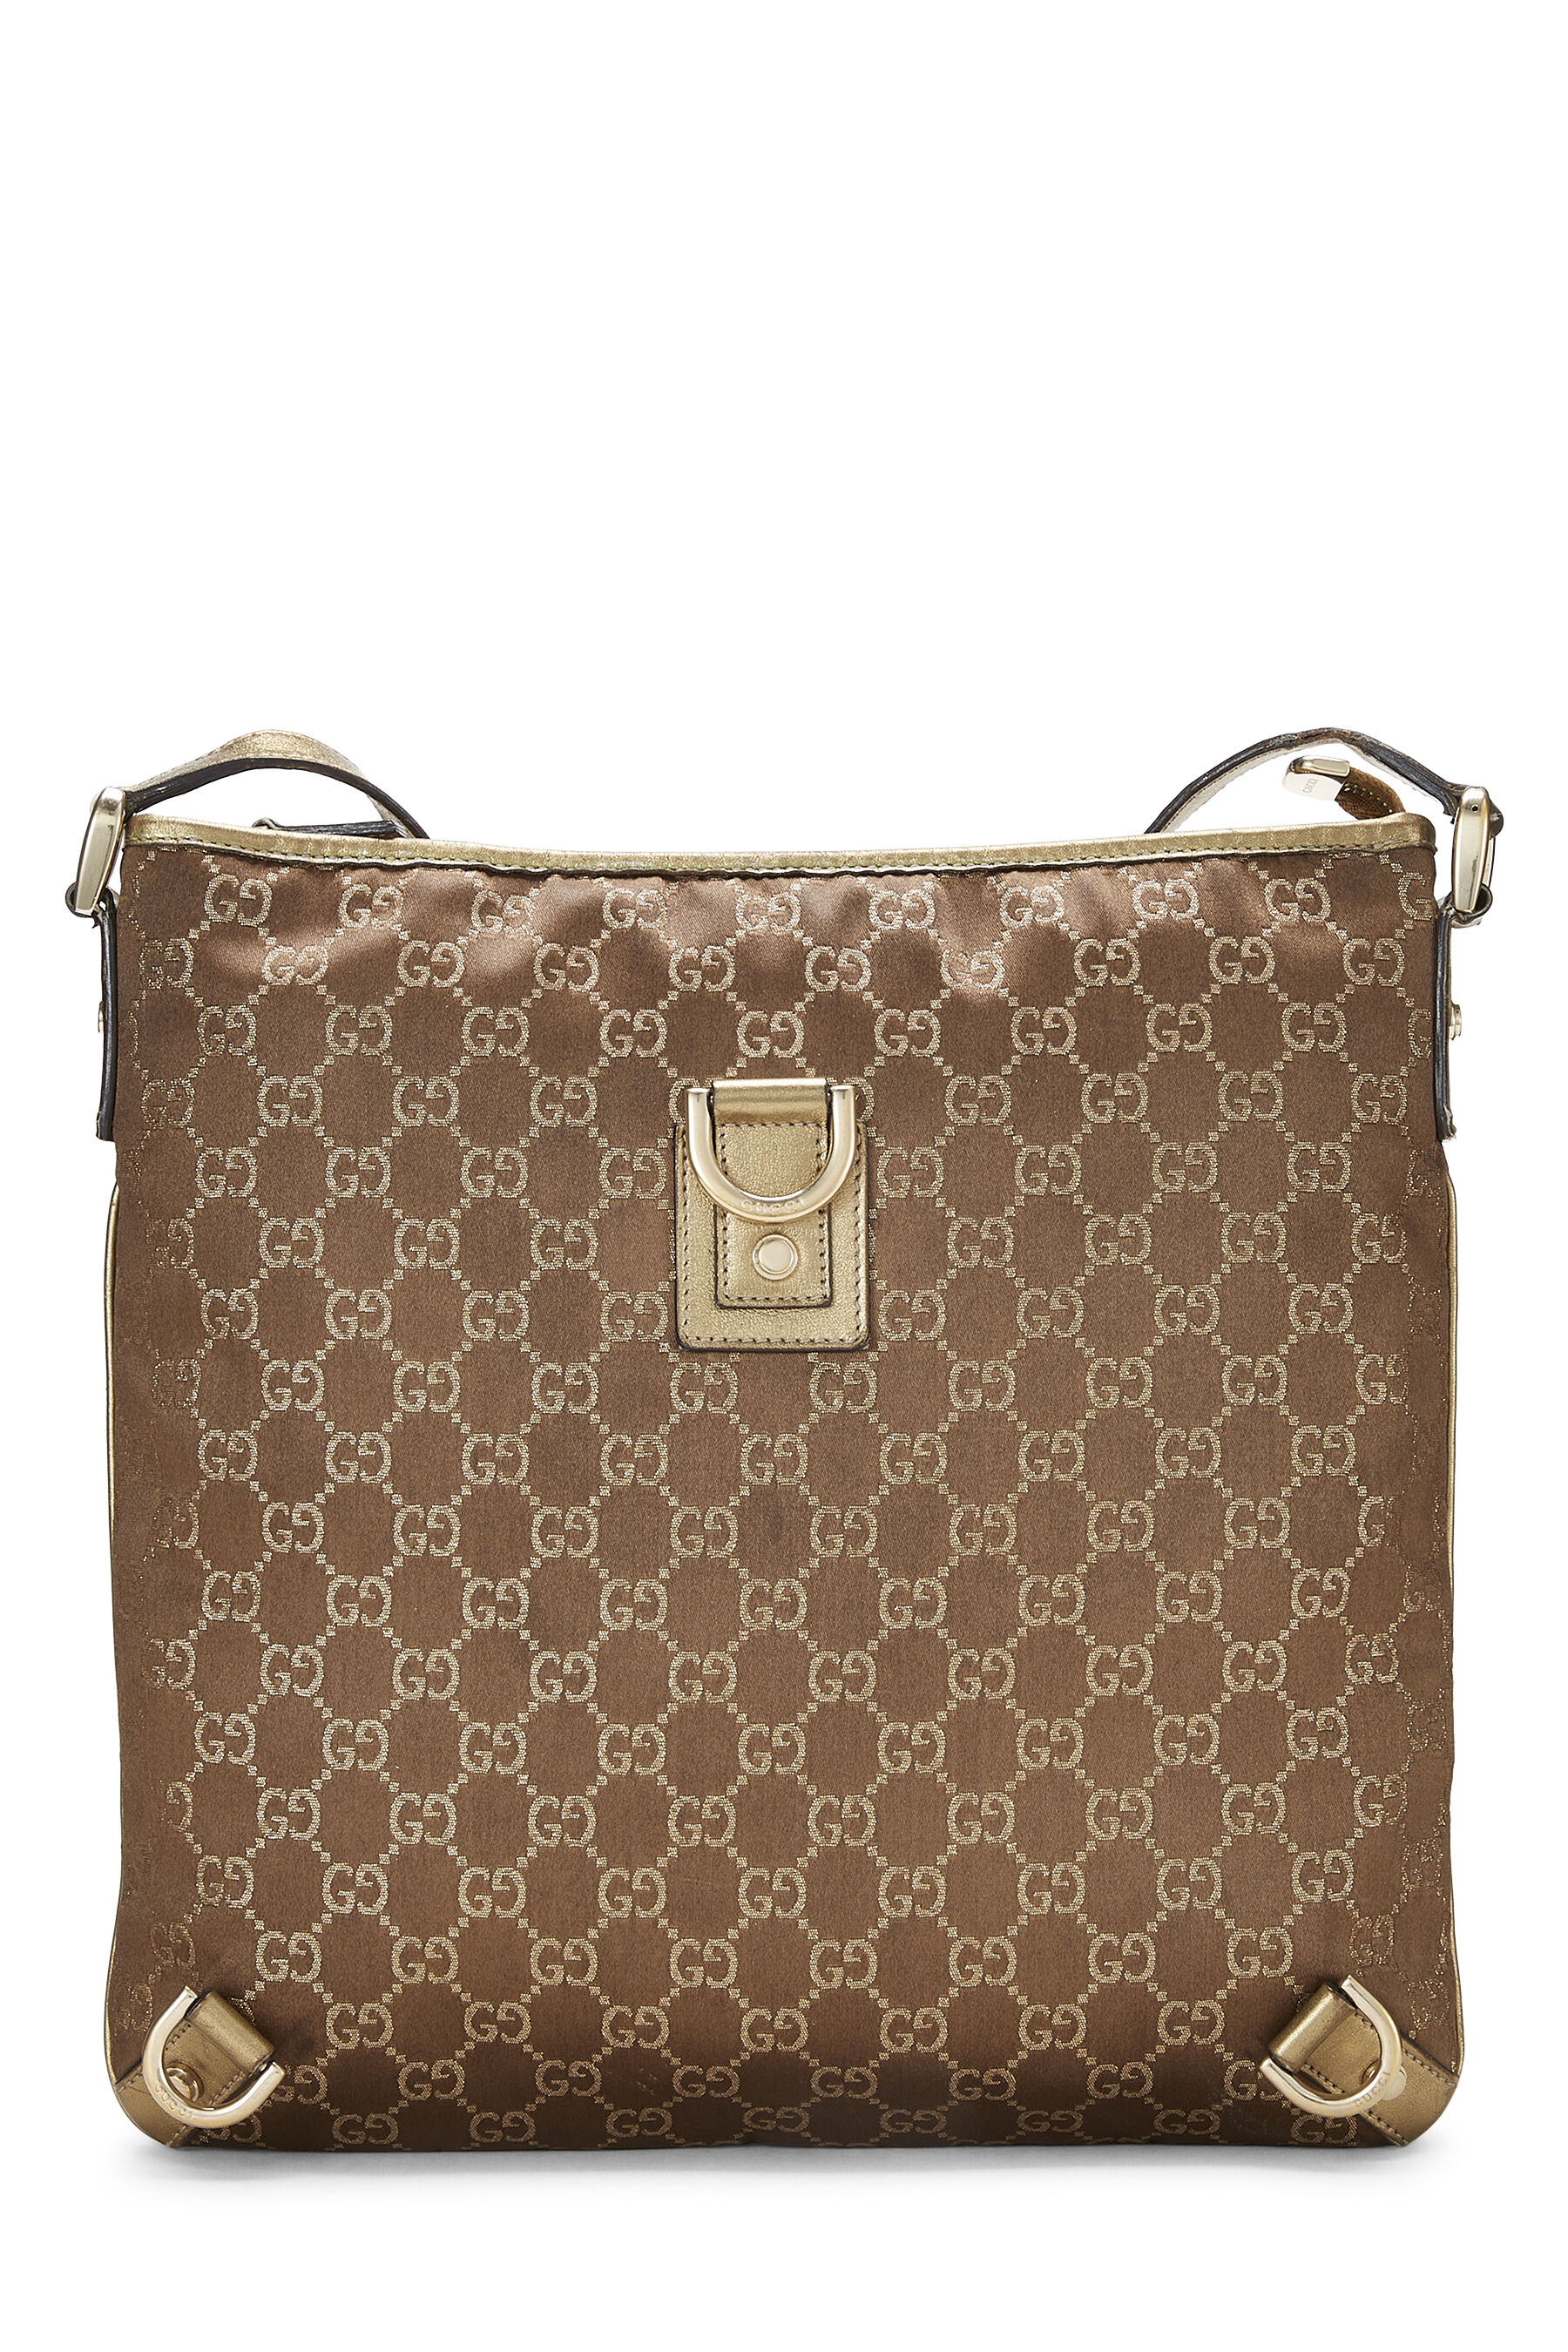 Gucci Gold Lurex GG D-Ring Abbey Messenger Bag